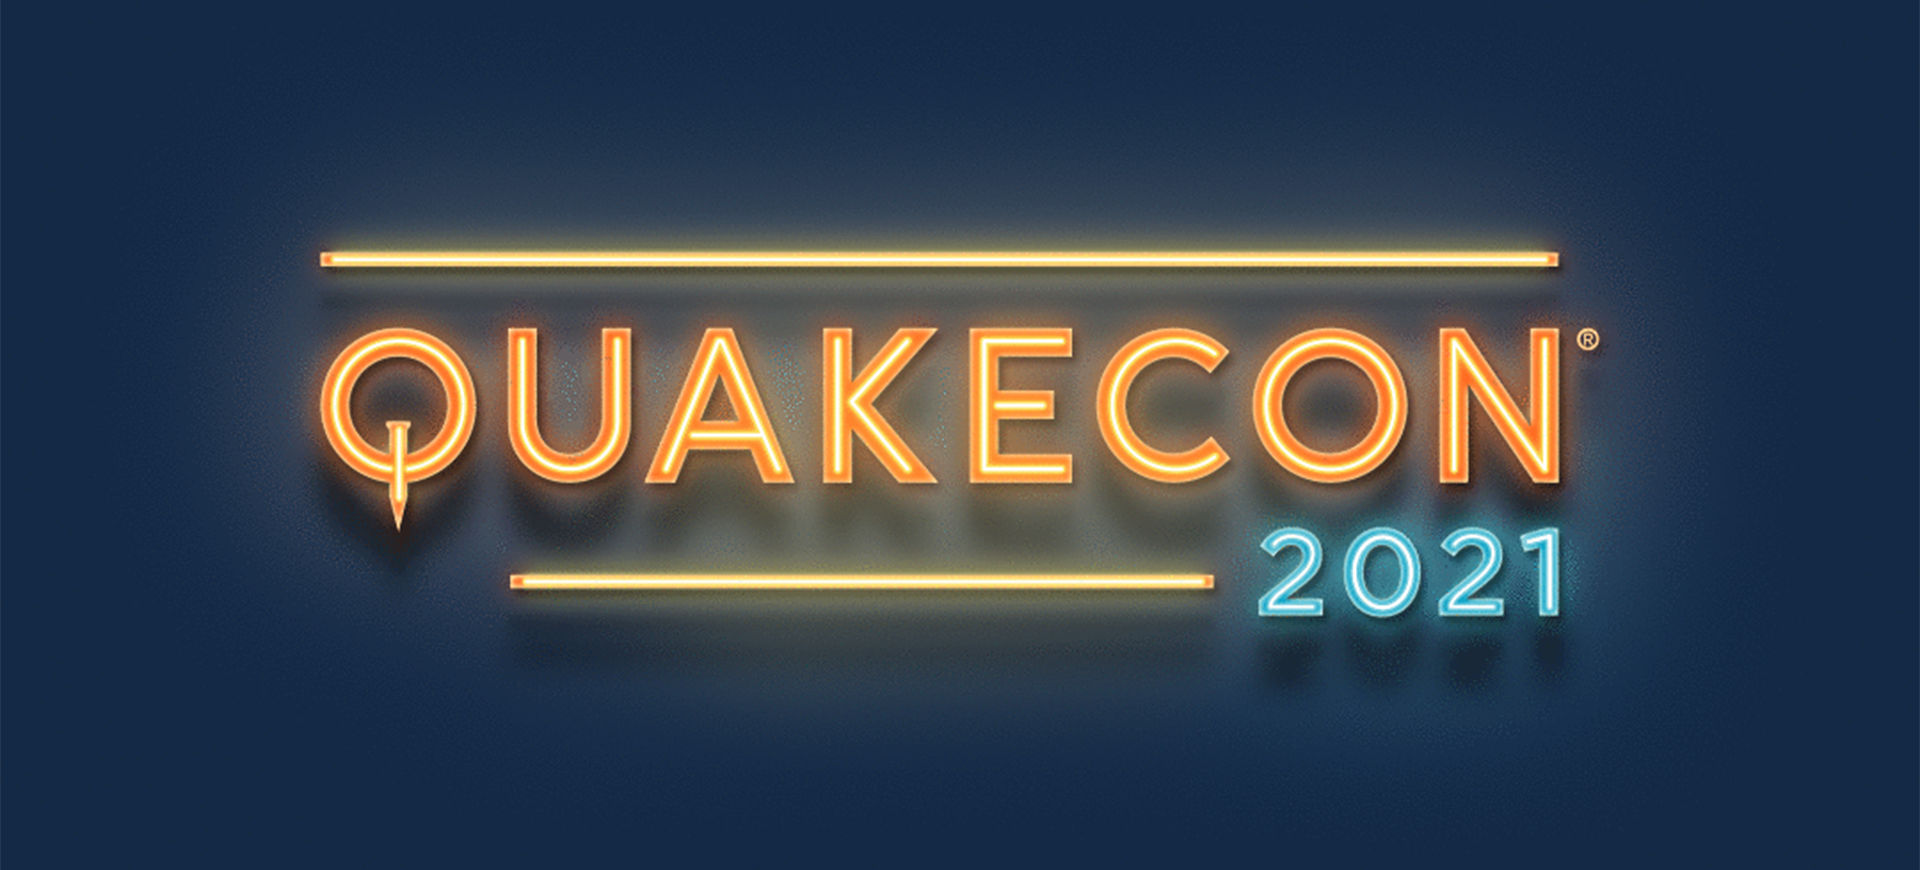 QuakeCon 2021 tarihi ve detayları duyuruldu